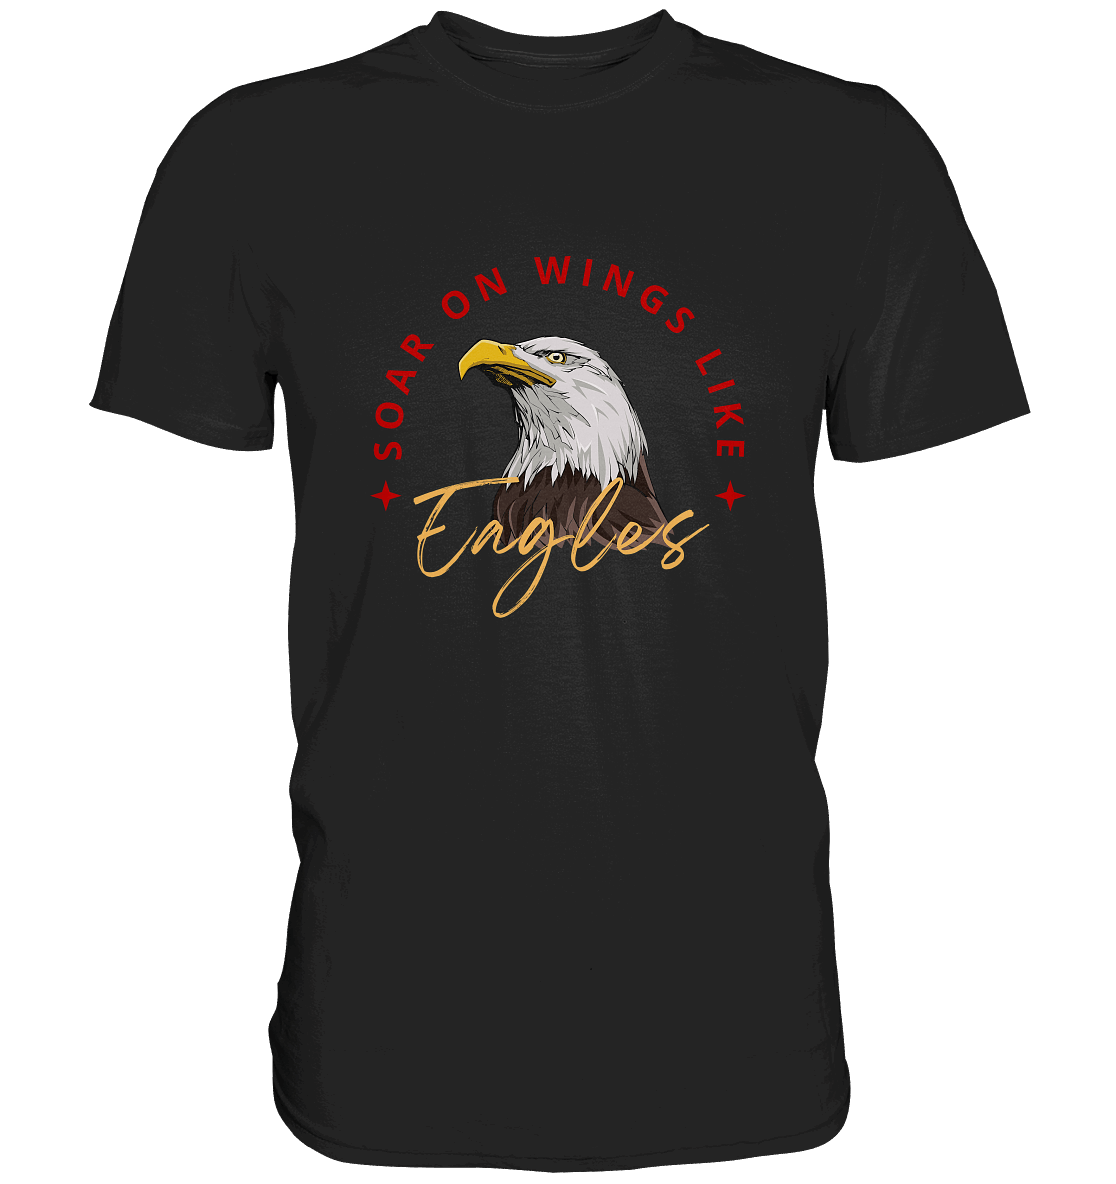 Flügel der Hoffnung - Inspiriert von Jesaja 40:31  - Premium Shirt